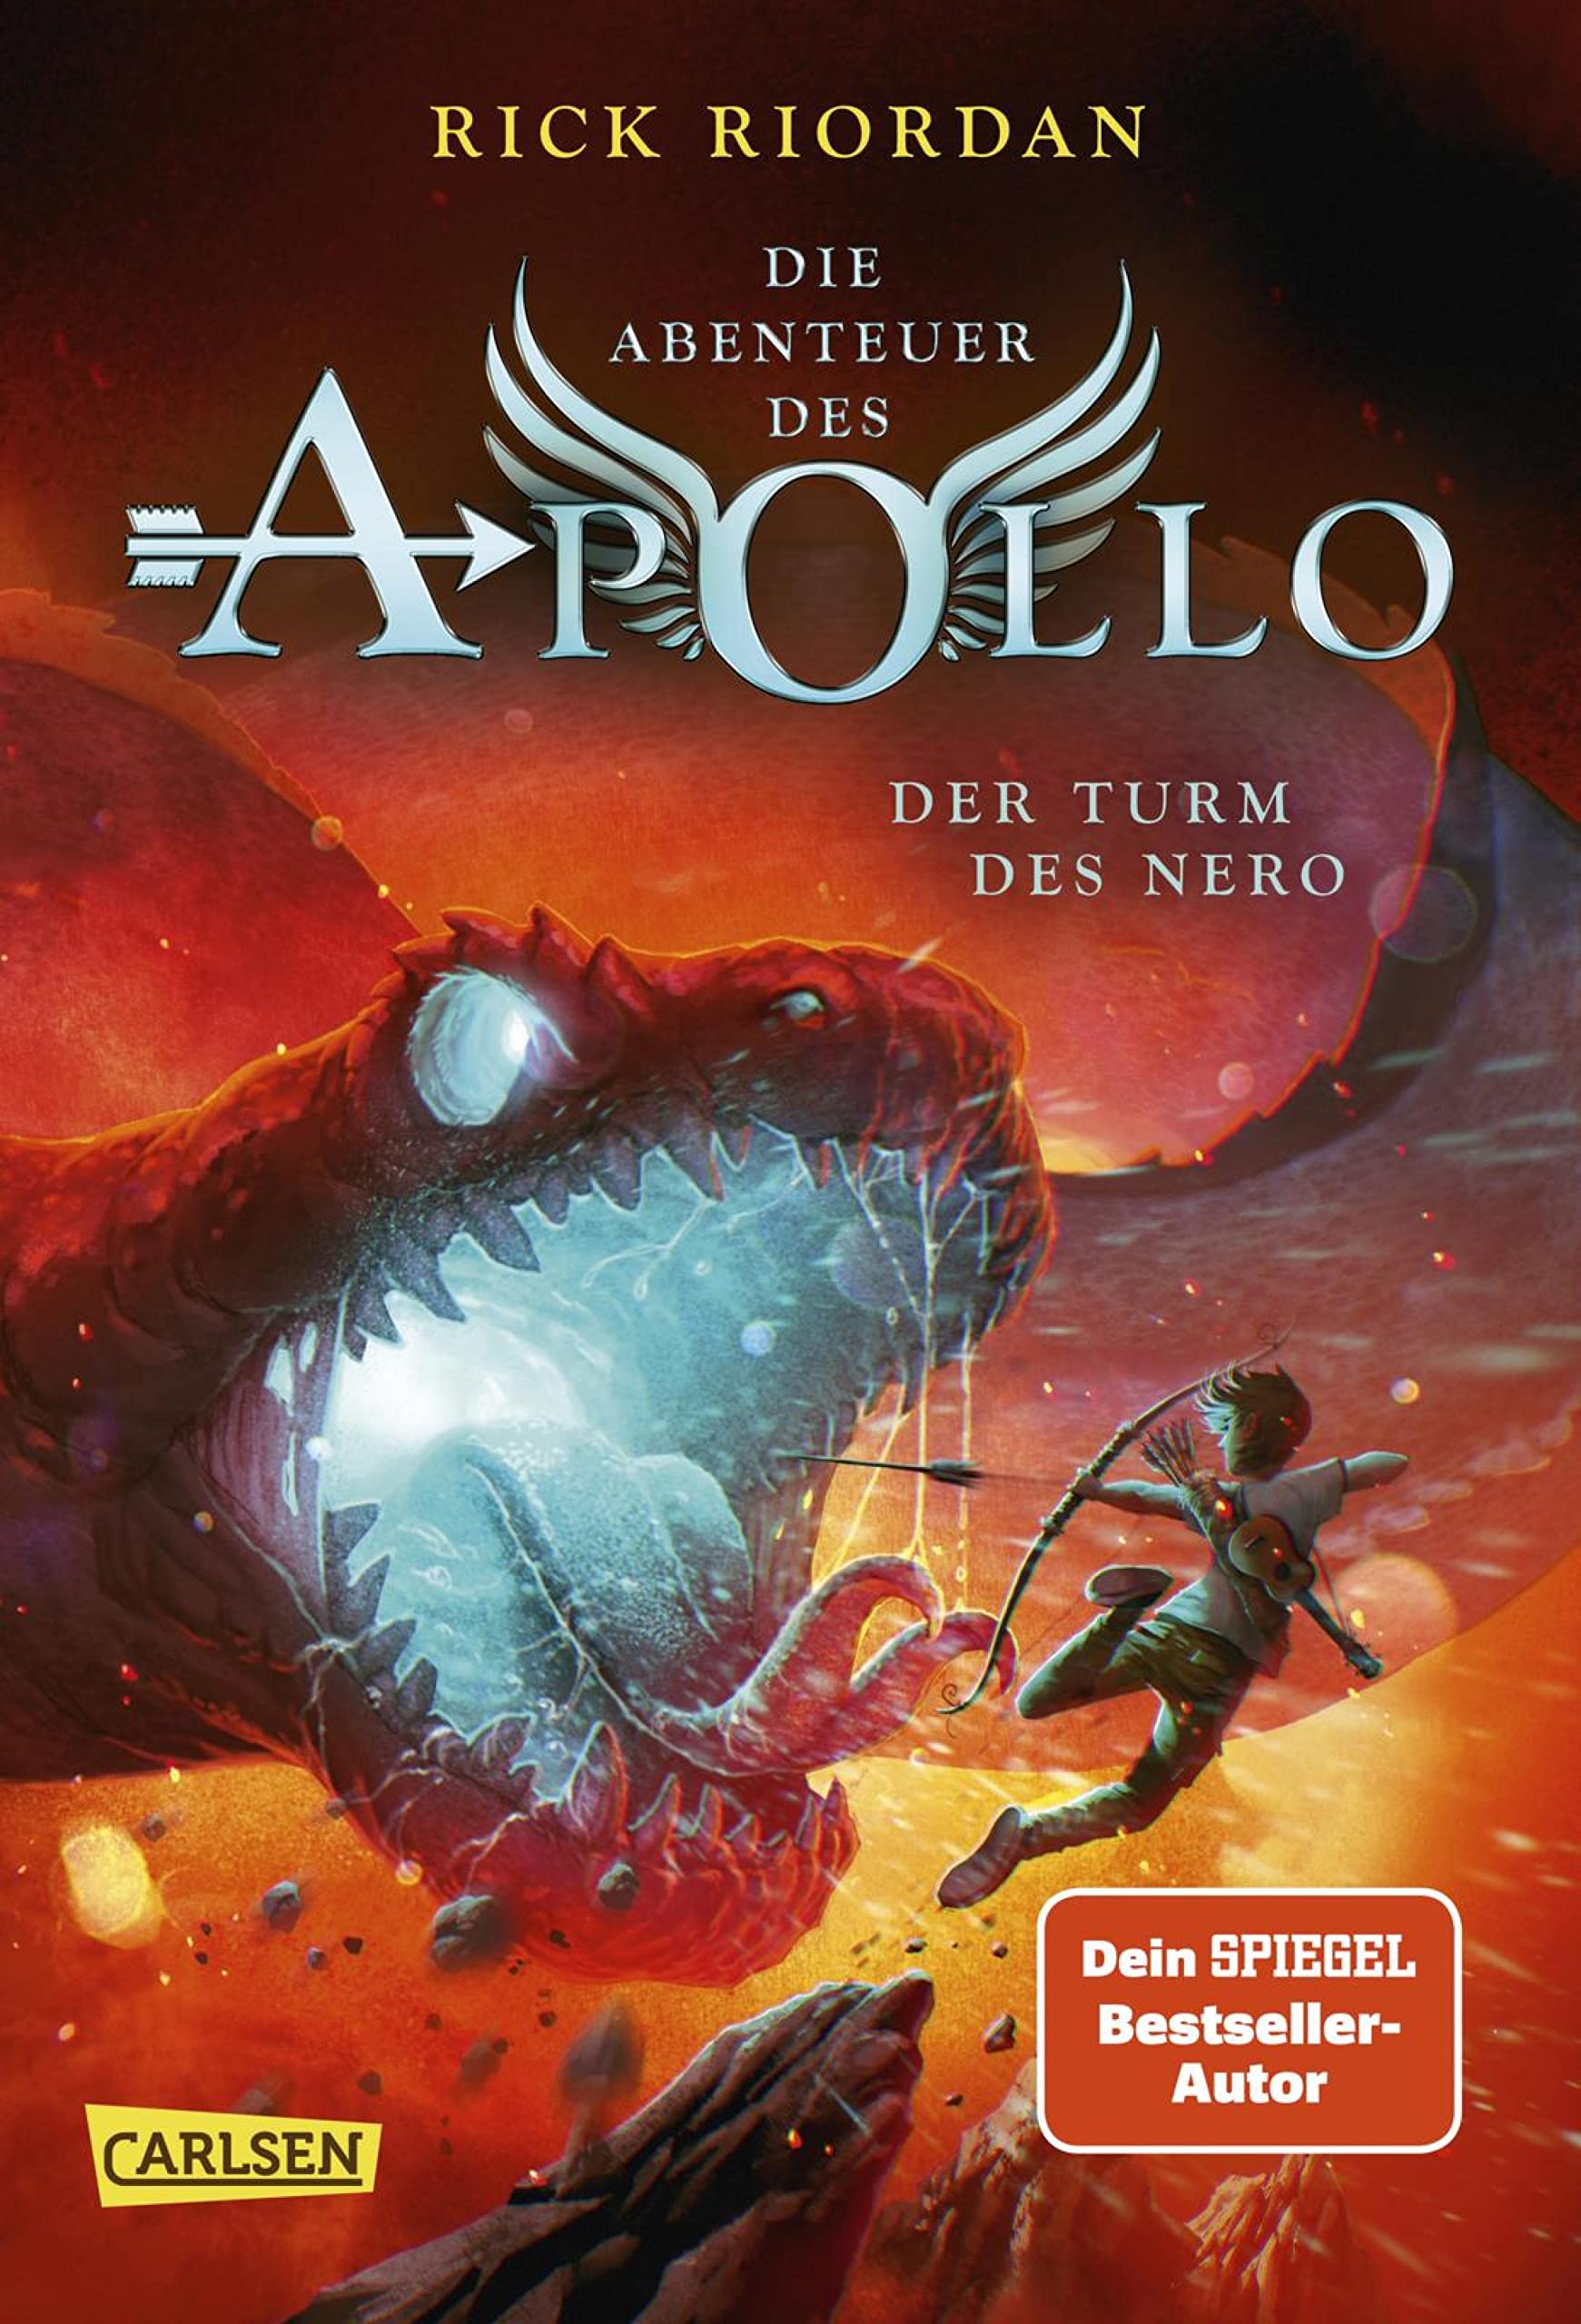 Die Abenteuer des Apollo 5: Der Turm des Nero: Der letzte Band der Bestsellerserie aus dem Kosmos von Percy Jackson! (German Edition)